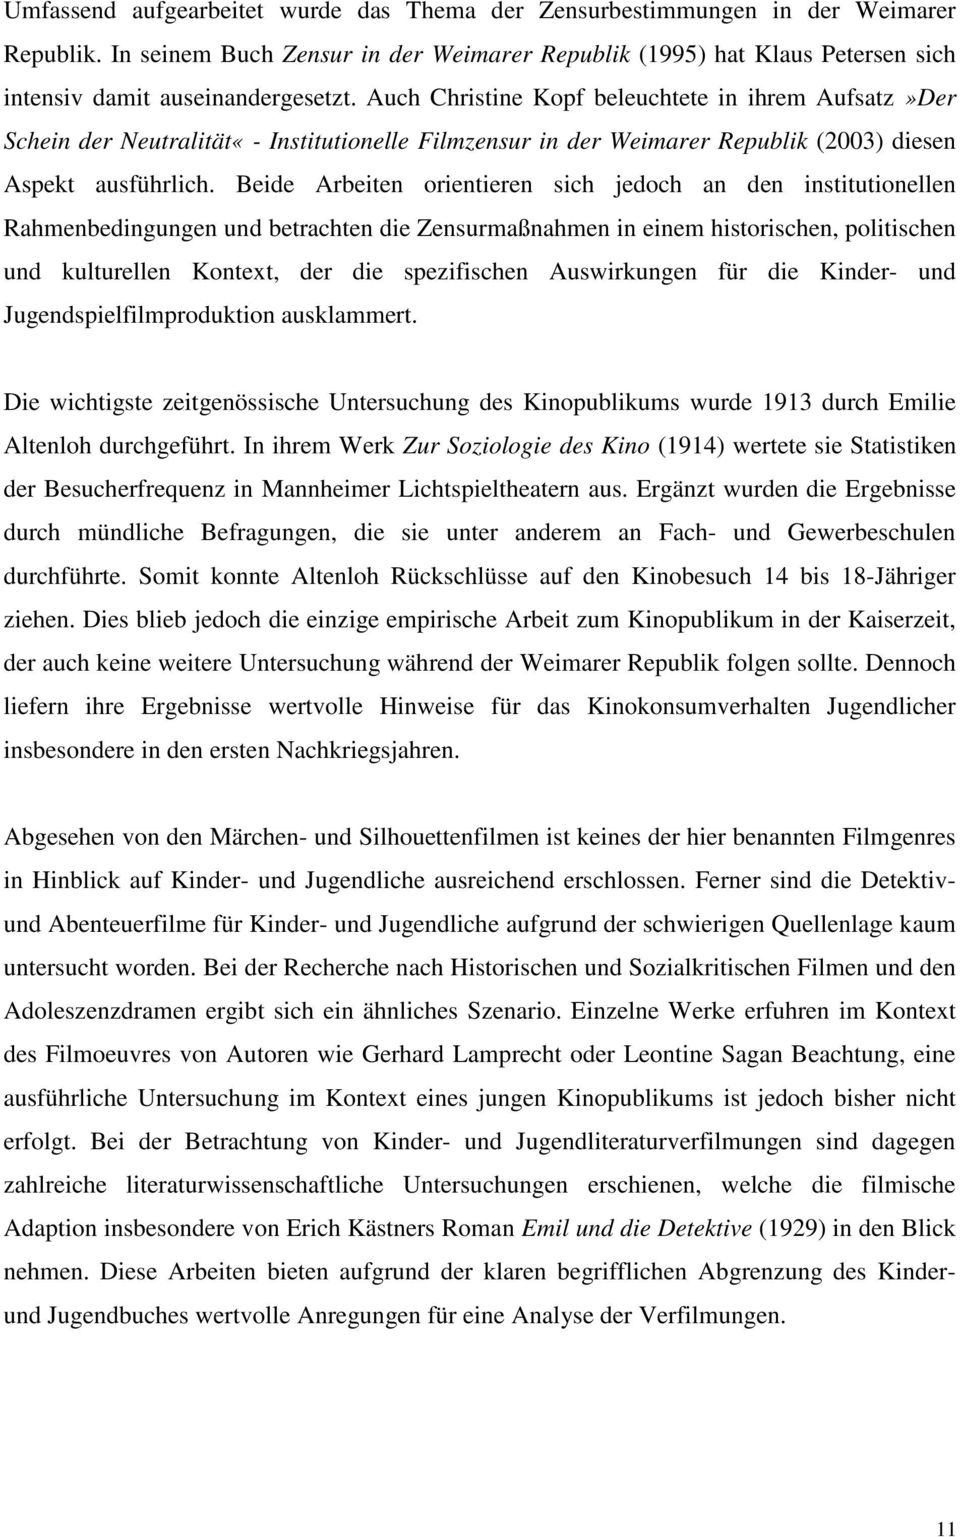 Auch Christine Kopf beleuchtete in ihrem Aufsatz»Der Schein der Neutralität«- Institutionelle Filmzensur in der Weimarer Republik (2003) diesen Aspekt ausführlich.